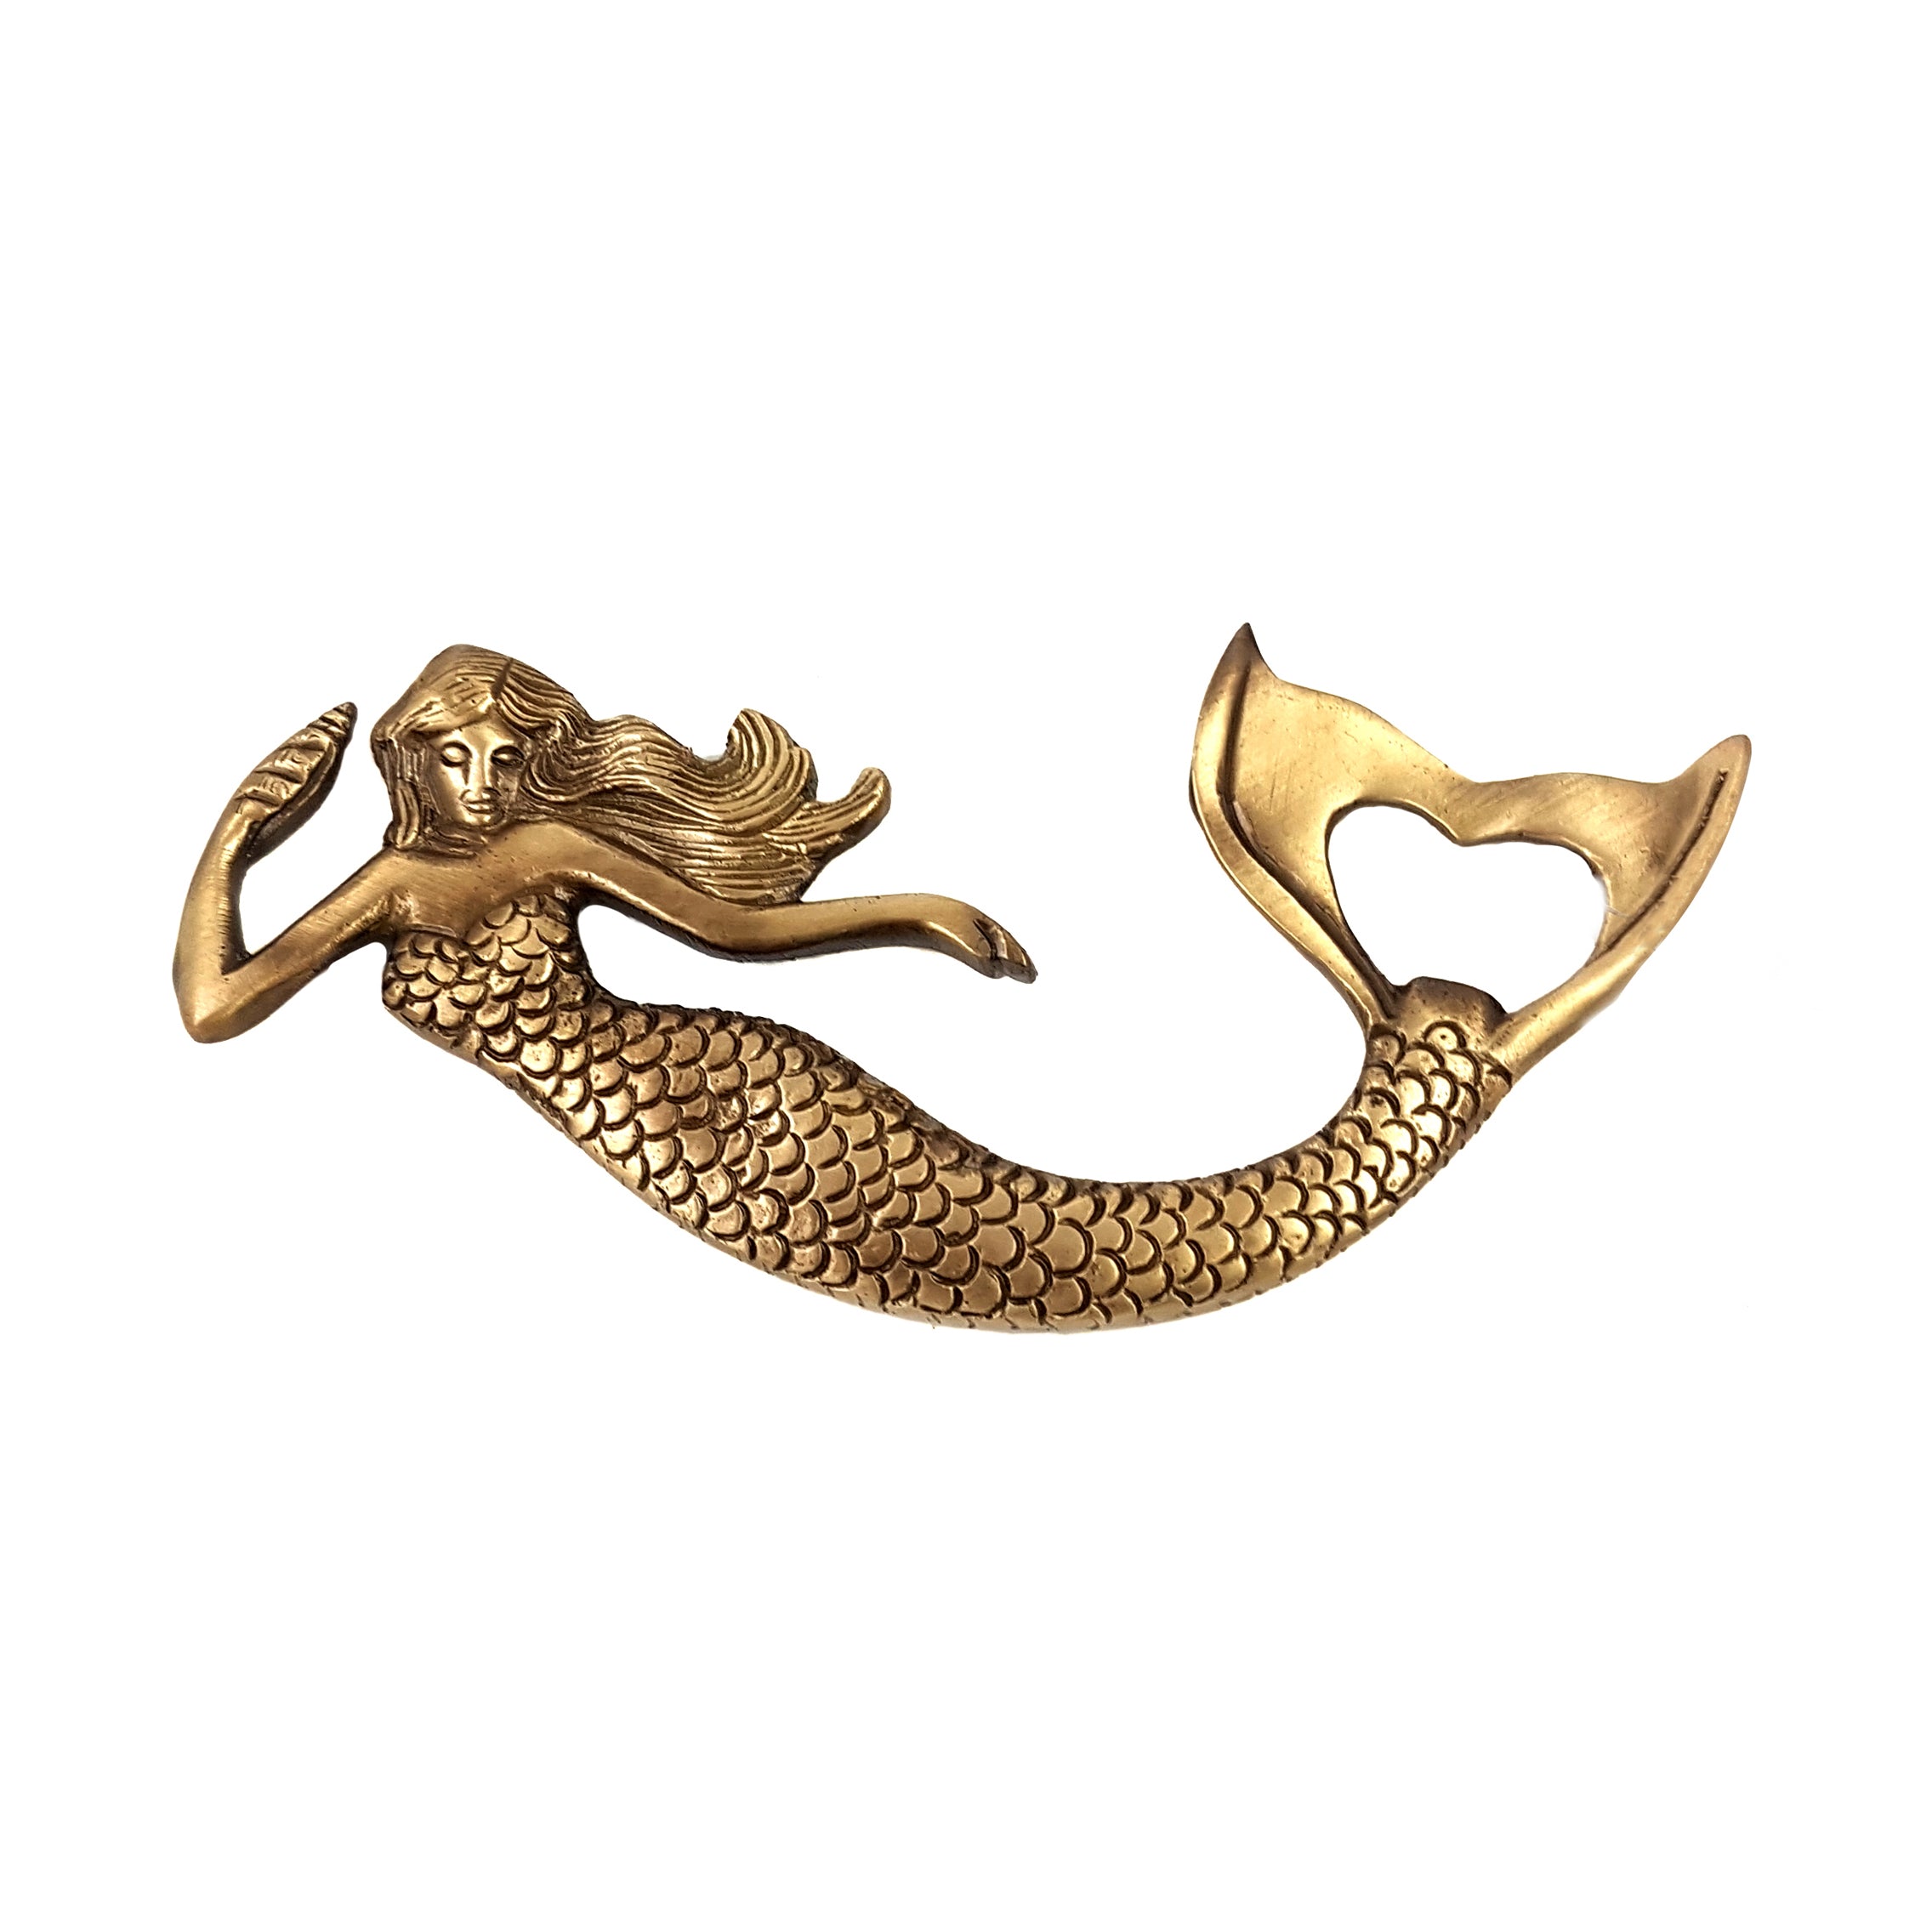 Brass Mermaid Design Bottle Opener, Bar Accessories, Brass Barware Decor